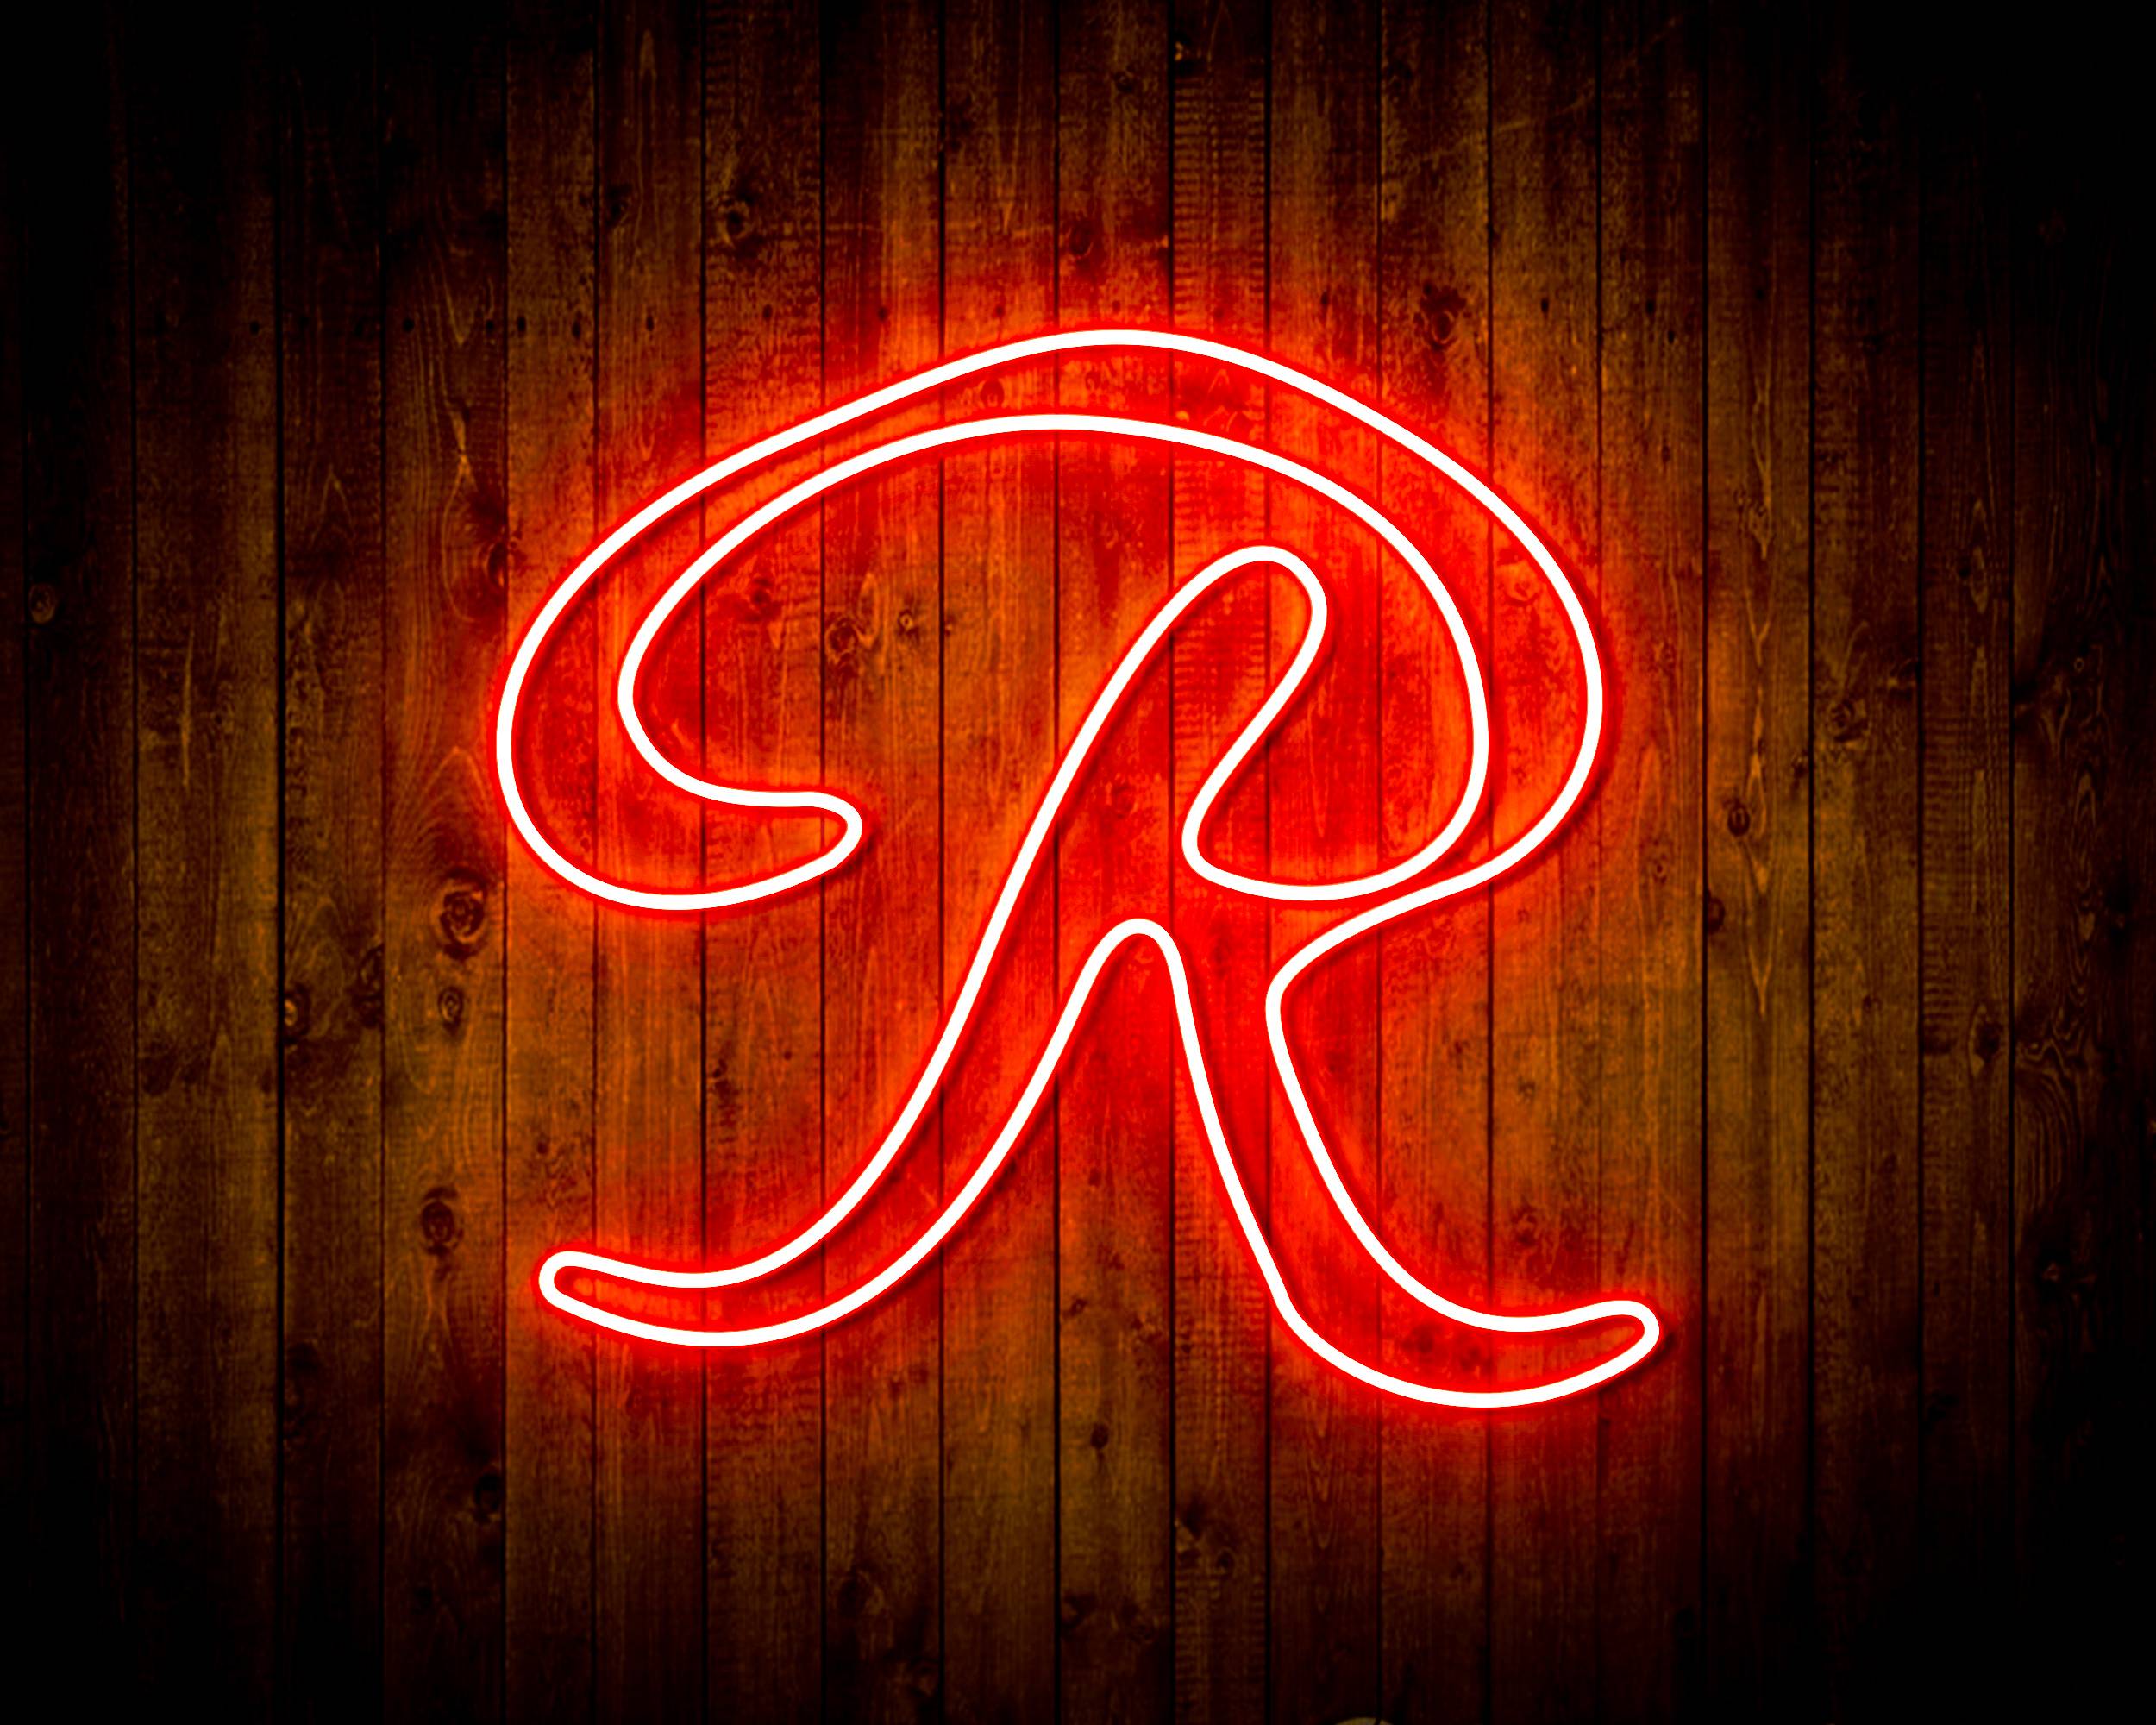 Rainier Ale Logo Handmade LED Neon Light Sign